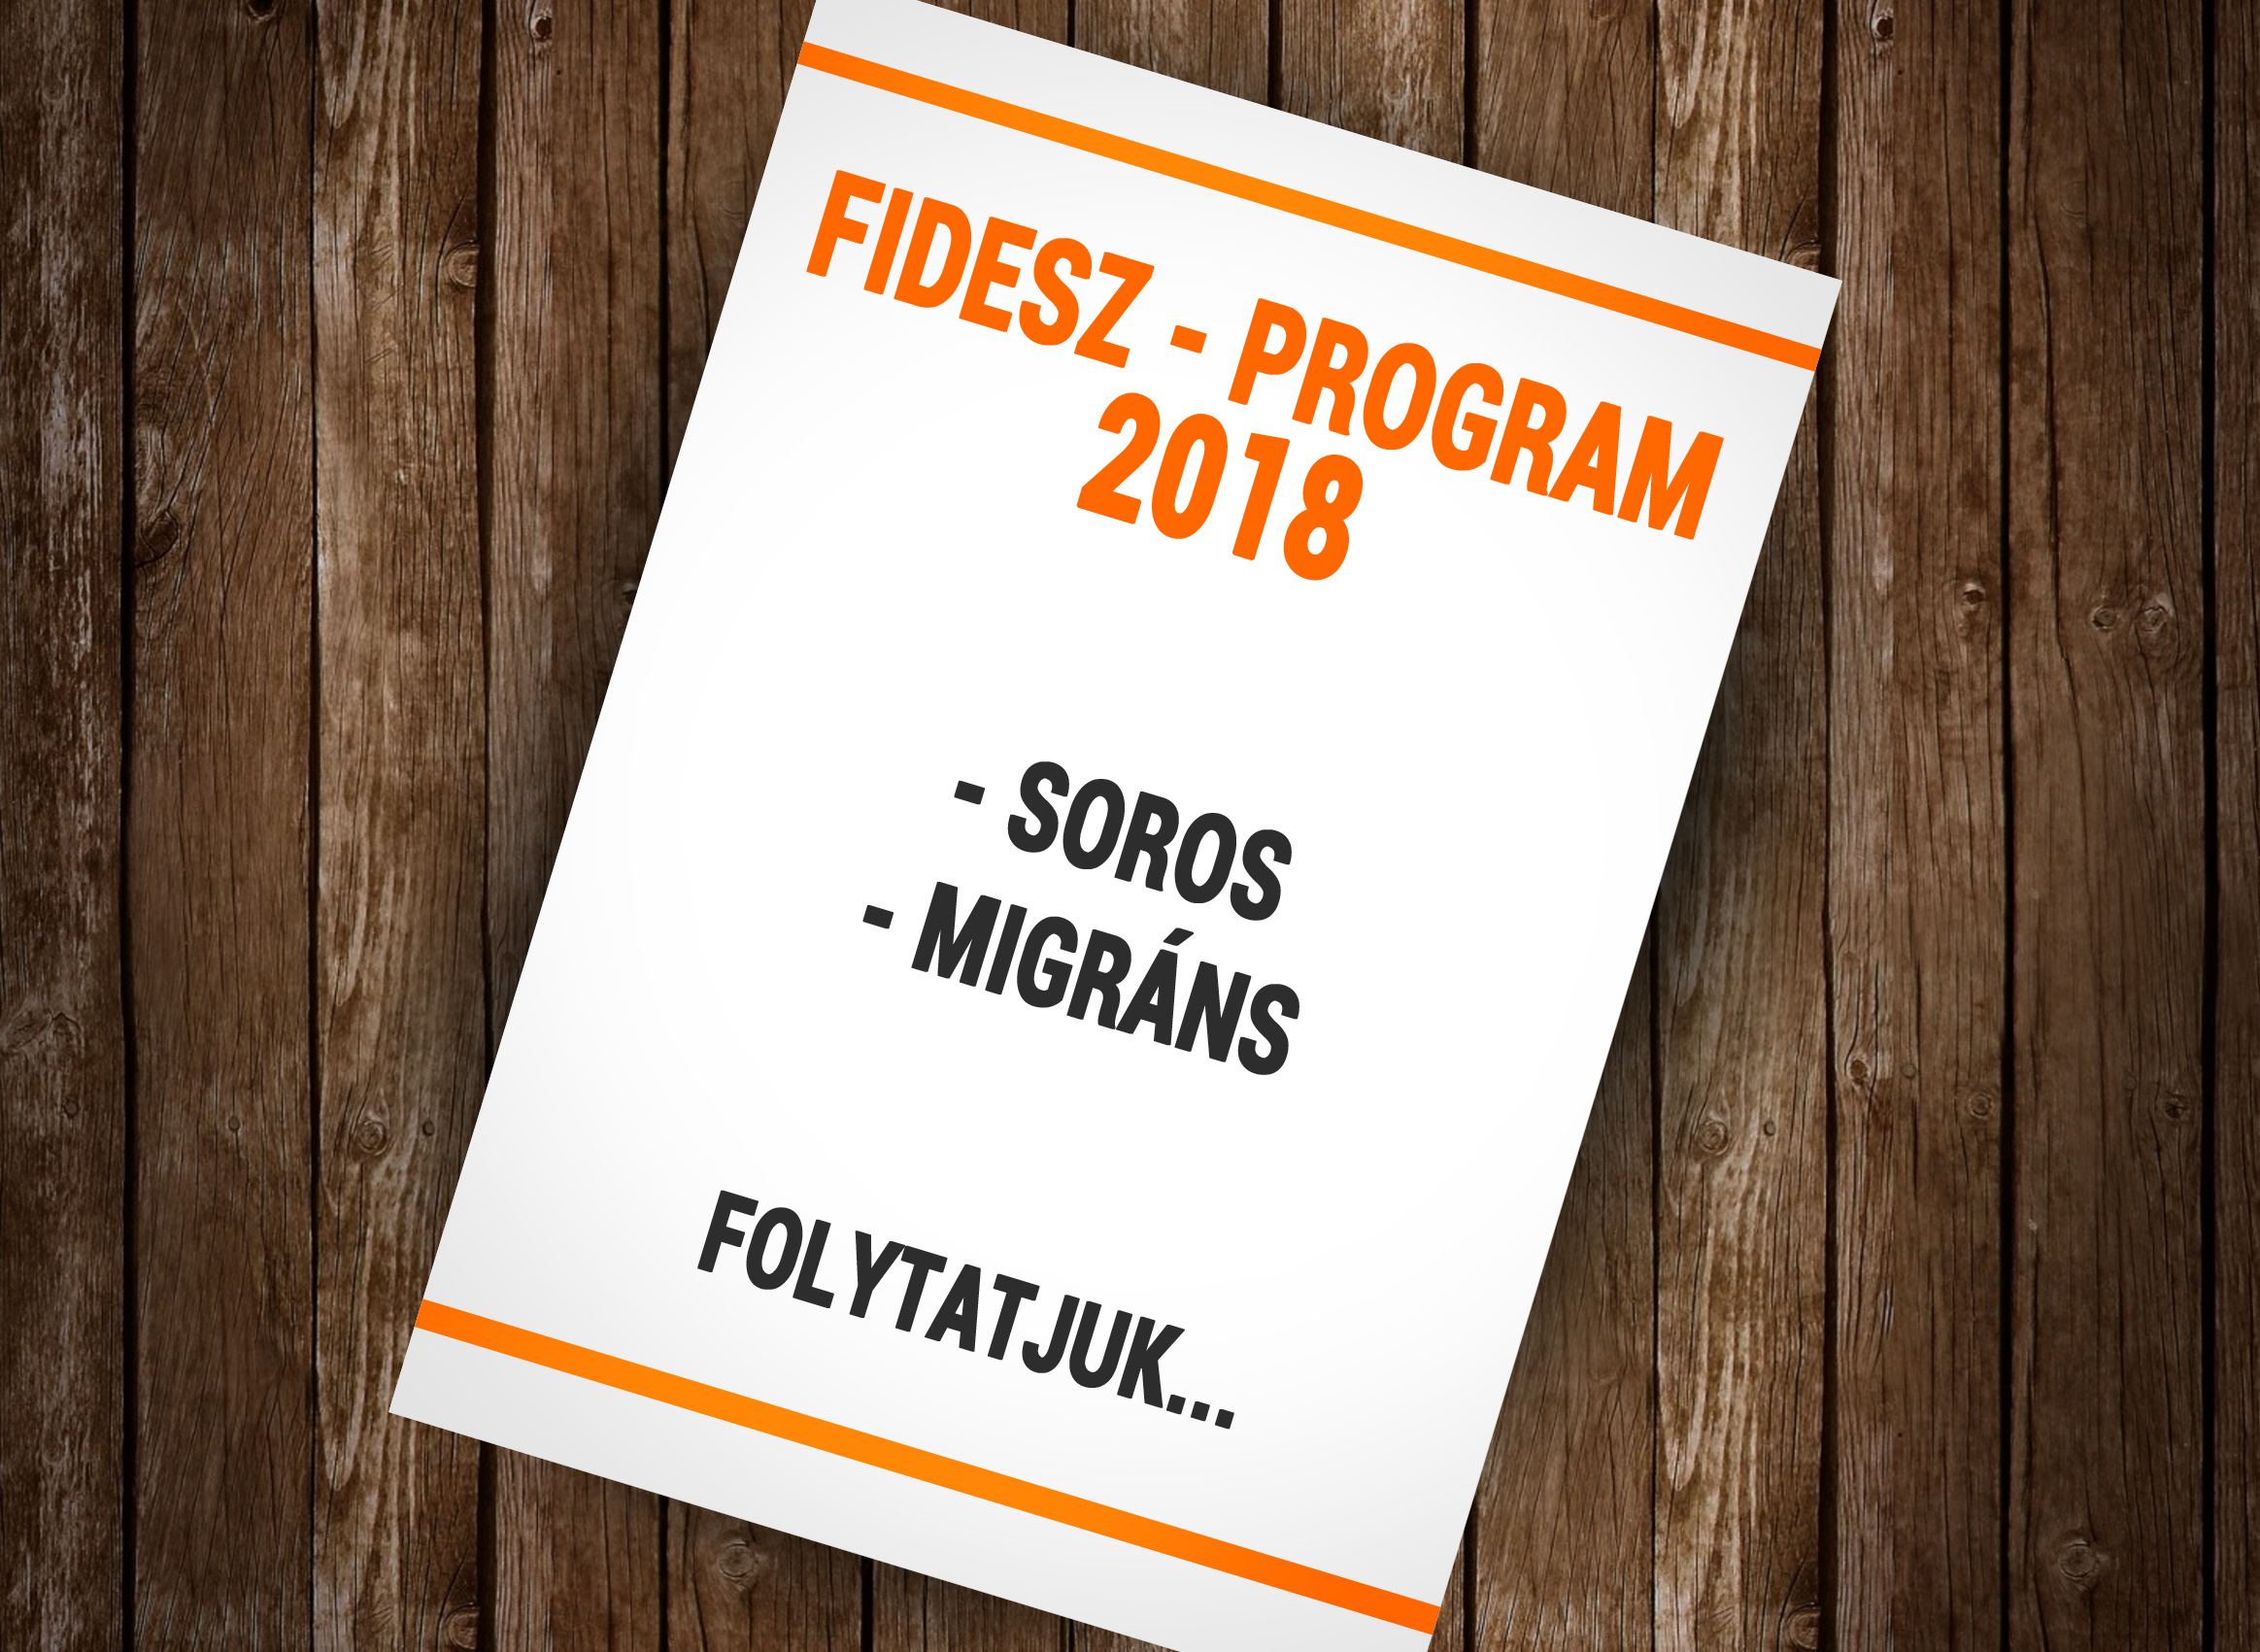 Fidesz_Program